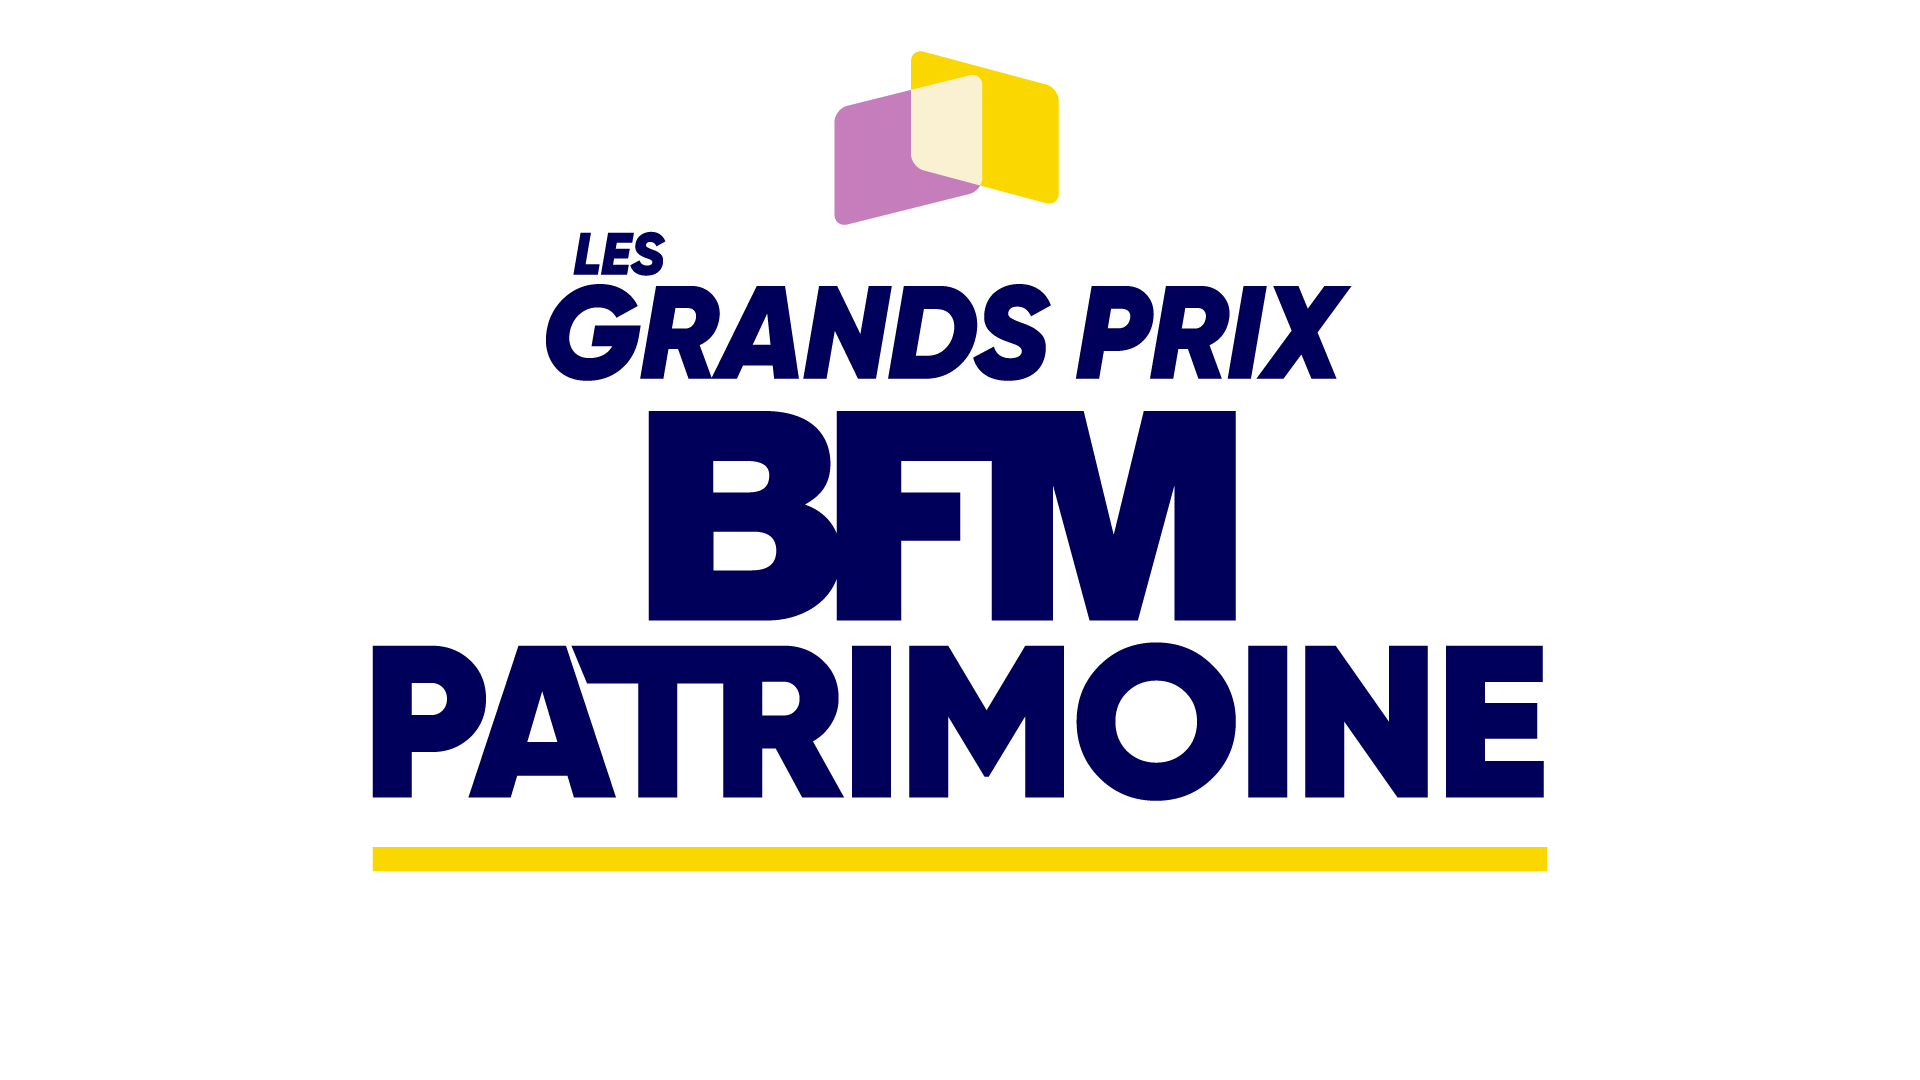 Les Grands Prix BFM Patrimoine